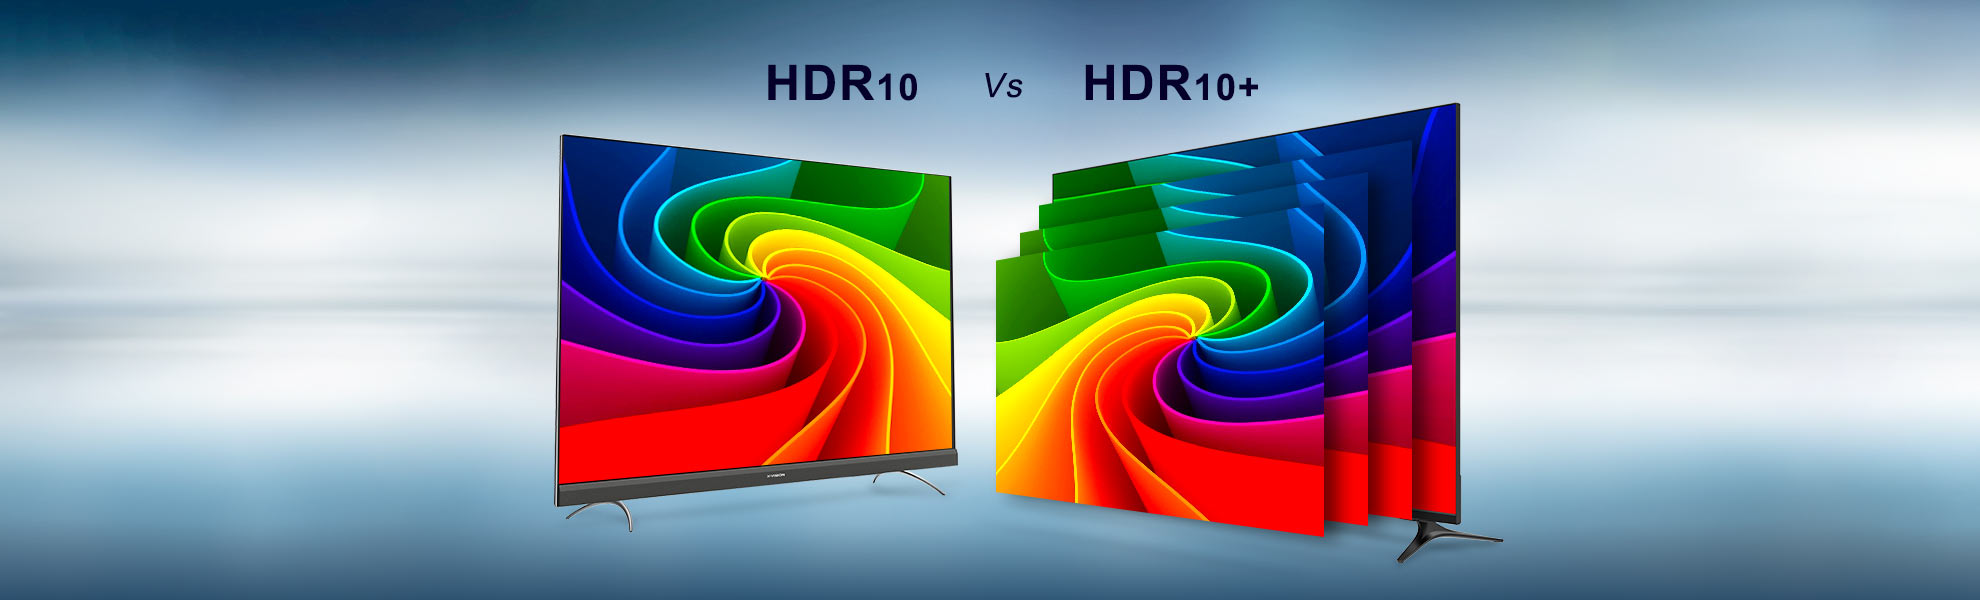 هر آنچه باید درباره hdr 10+ بدانید | تفاوت با HDR 10